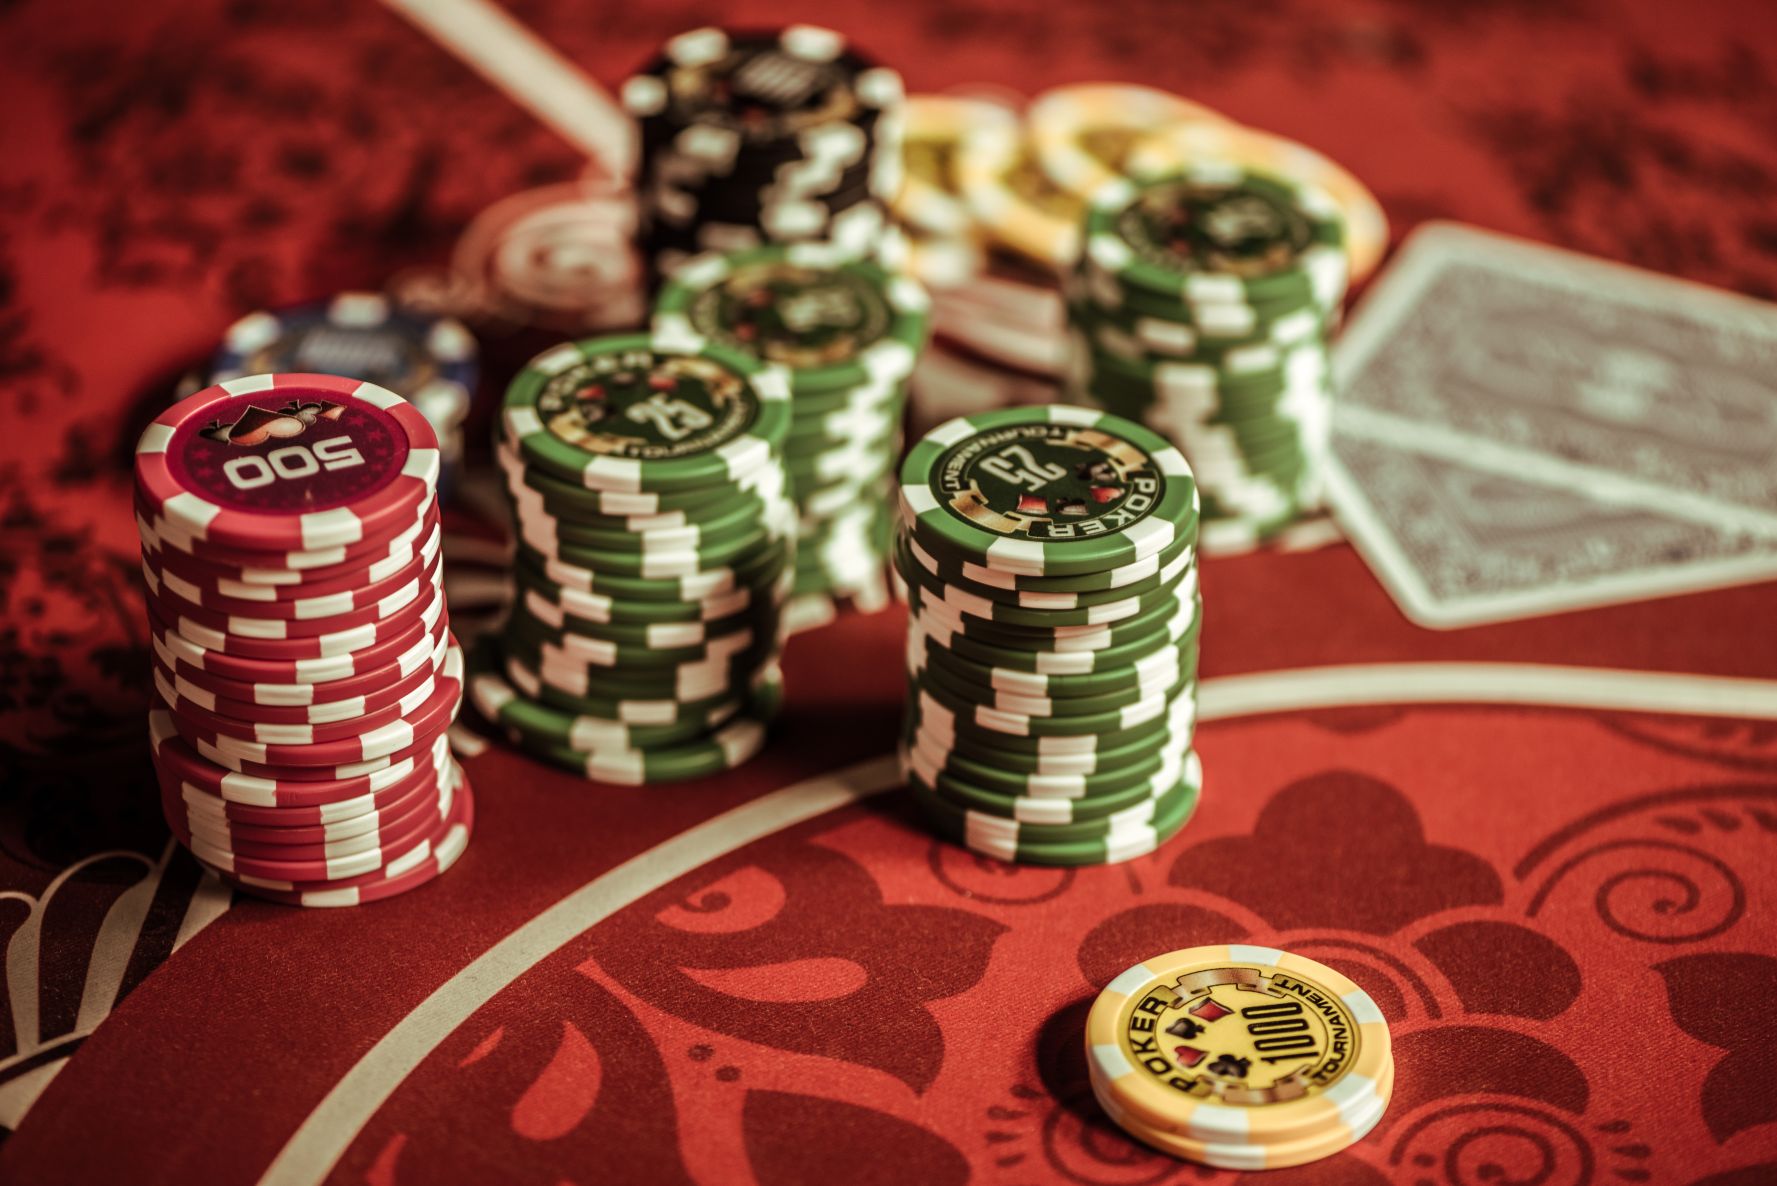 Gdzie będzie legalne kasyna online w polsce za 6 miesięcy od teraz?